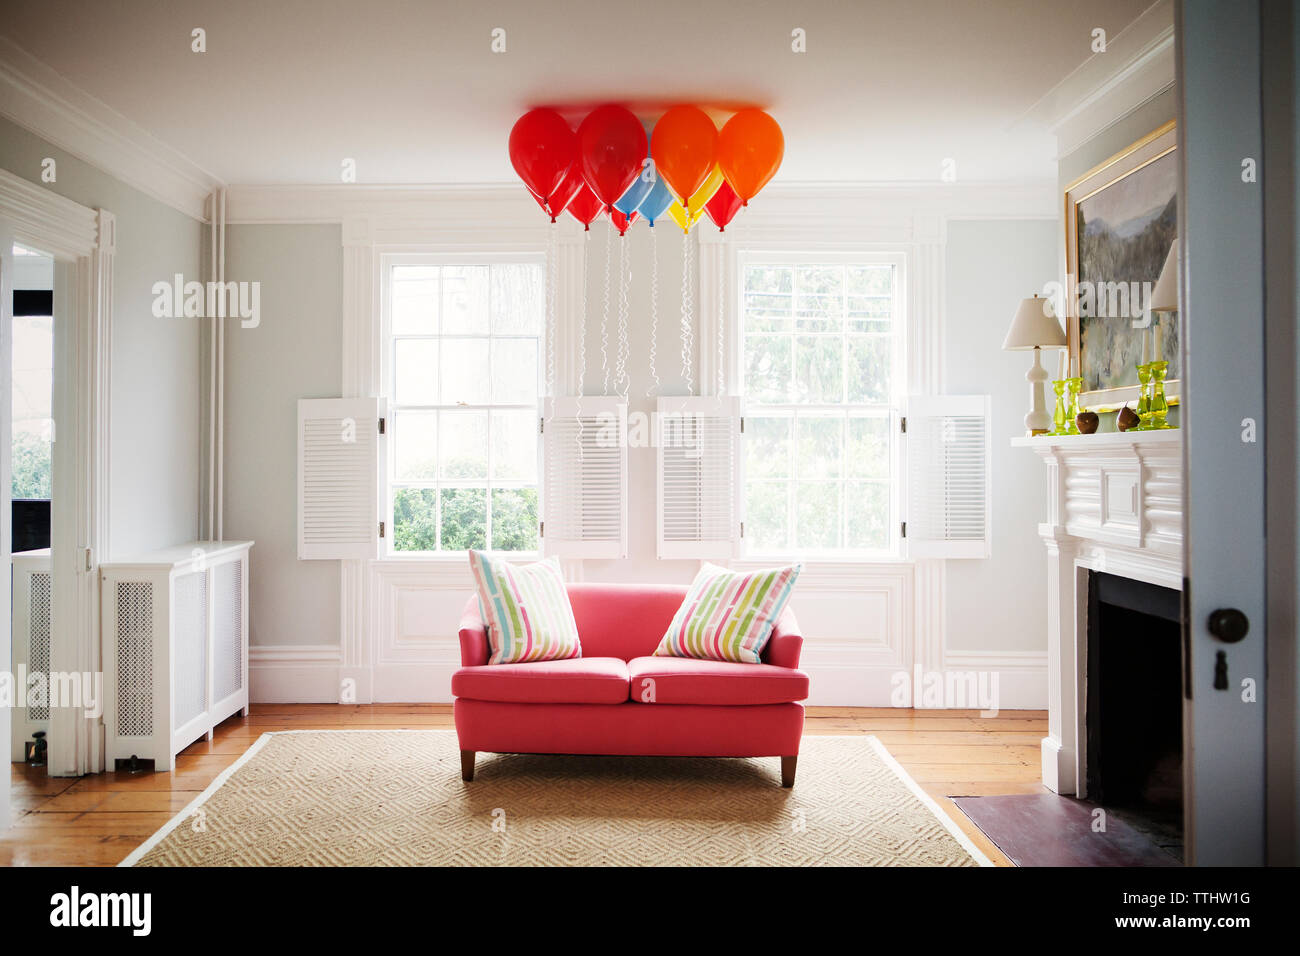 Ballons à l'hélium sur canapé dans la salle de séjour à la maison Banque D'Images